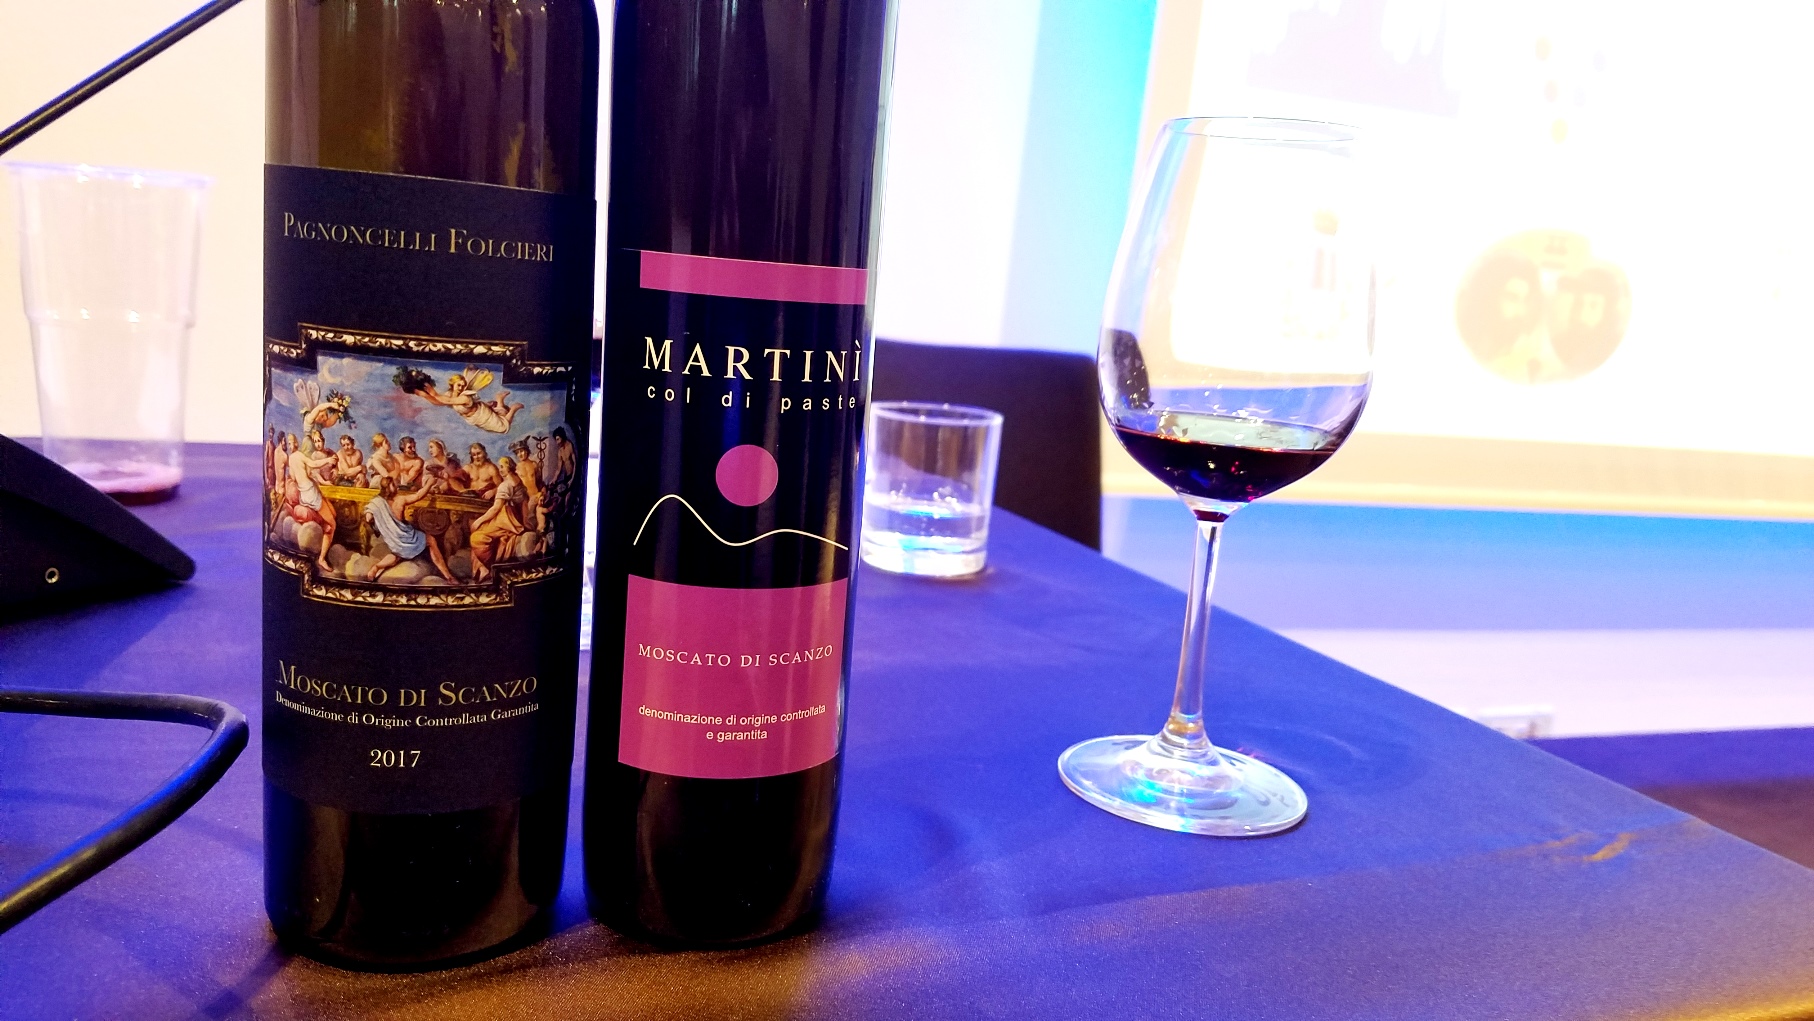 Martinì Col di Paste, Moscato di Scanzo DOCG 2017, Lombardy, Italy, Wine Casual